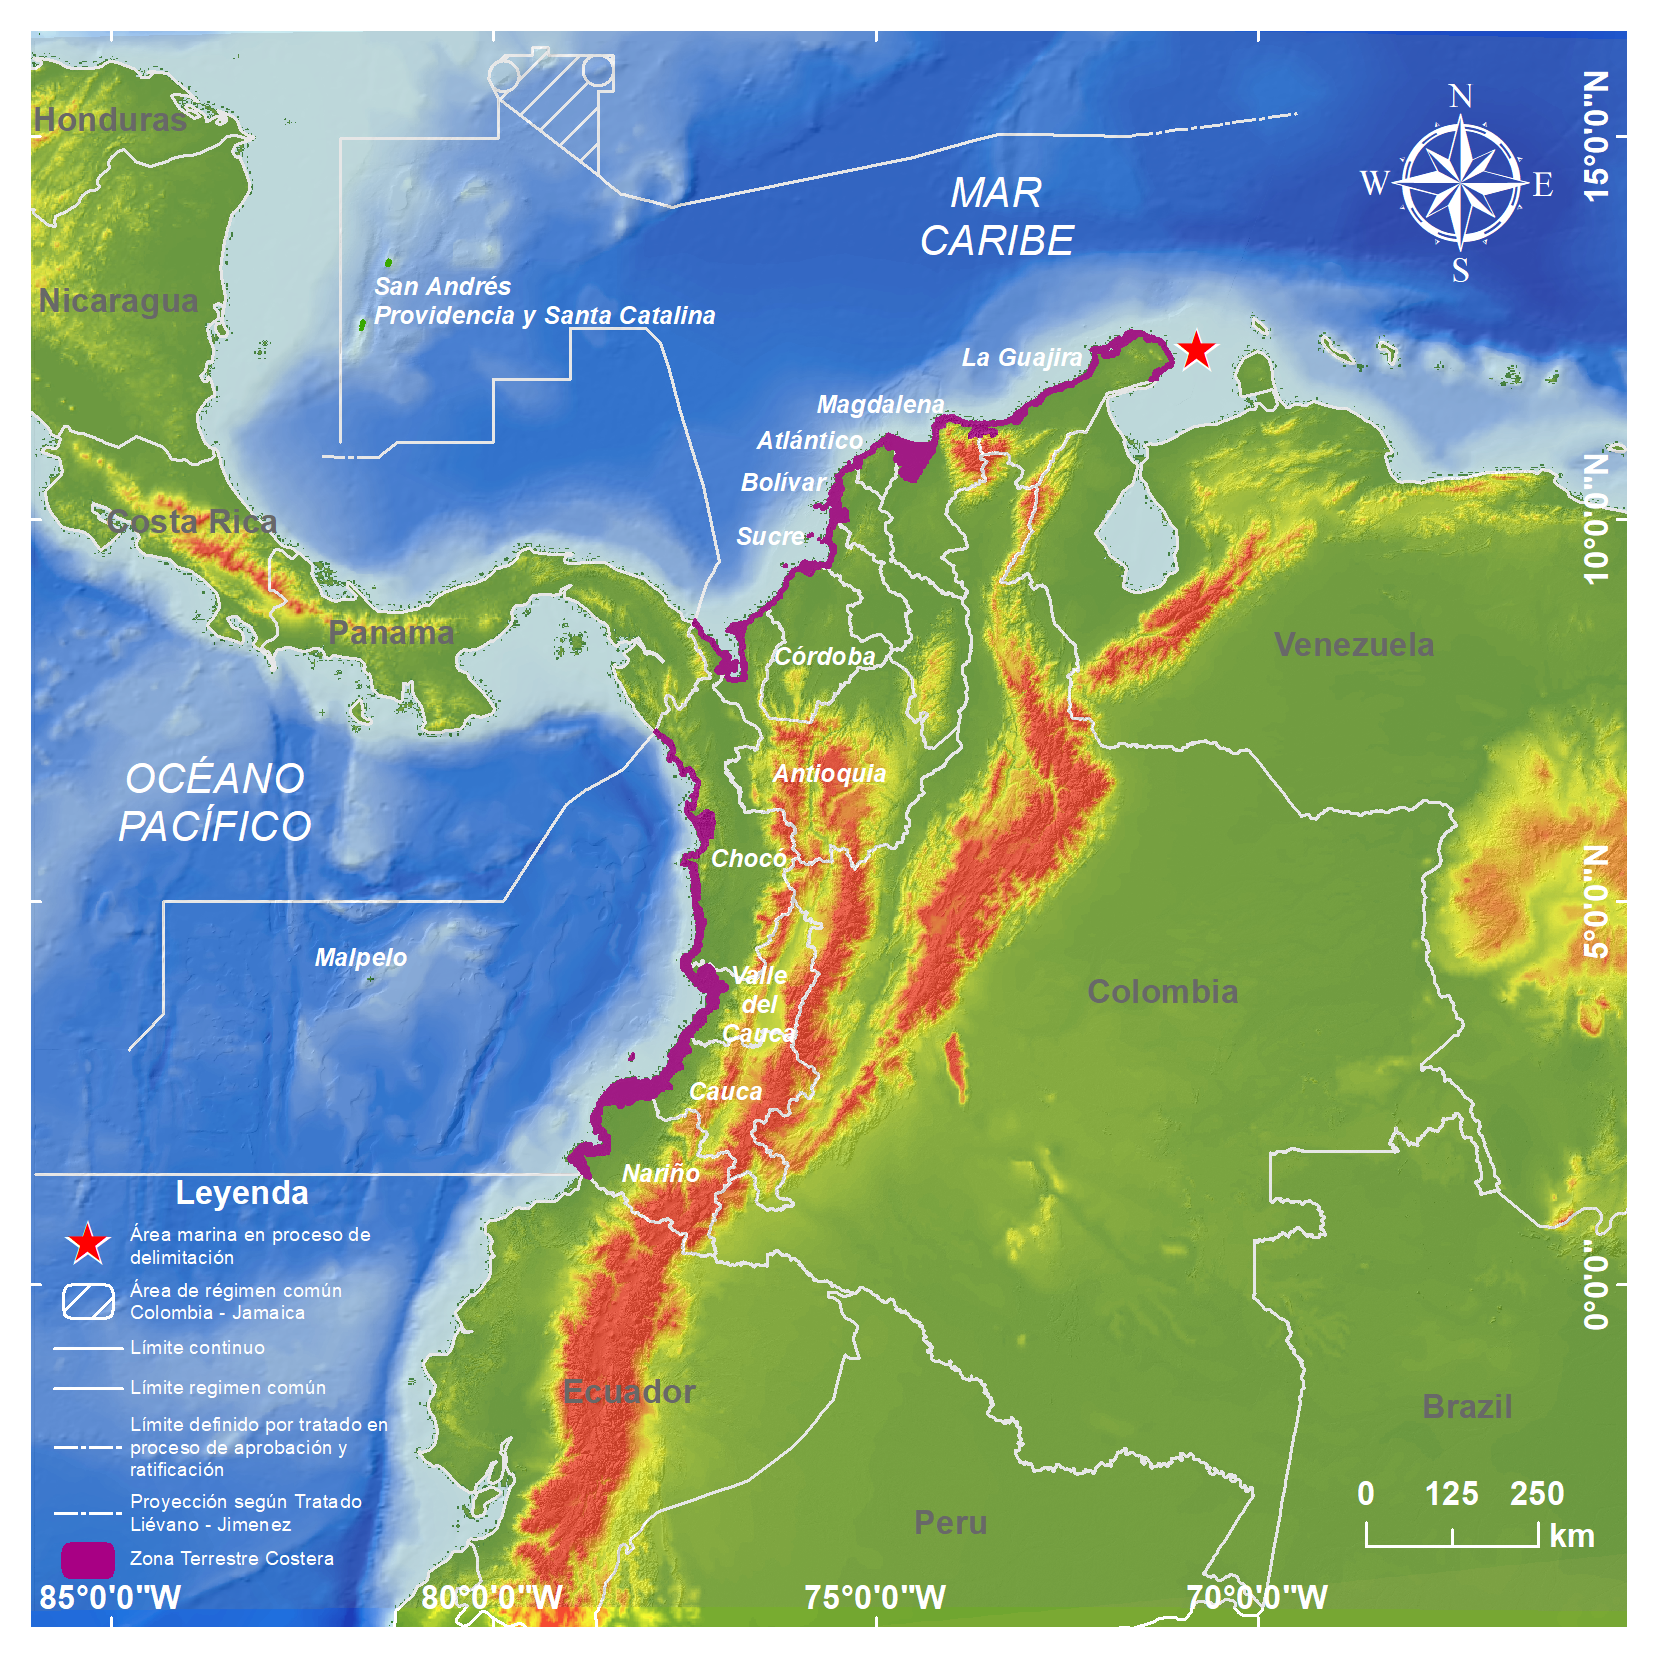 Mapa de Colombia donde se marca la zonas marinas